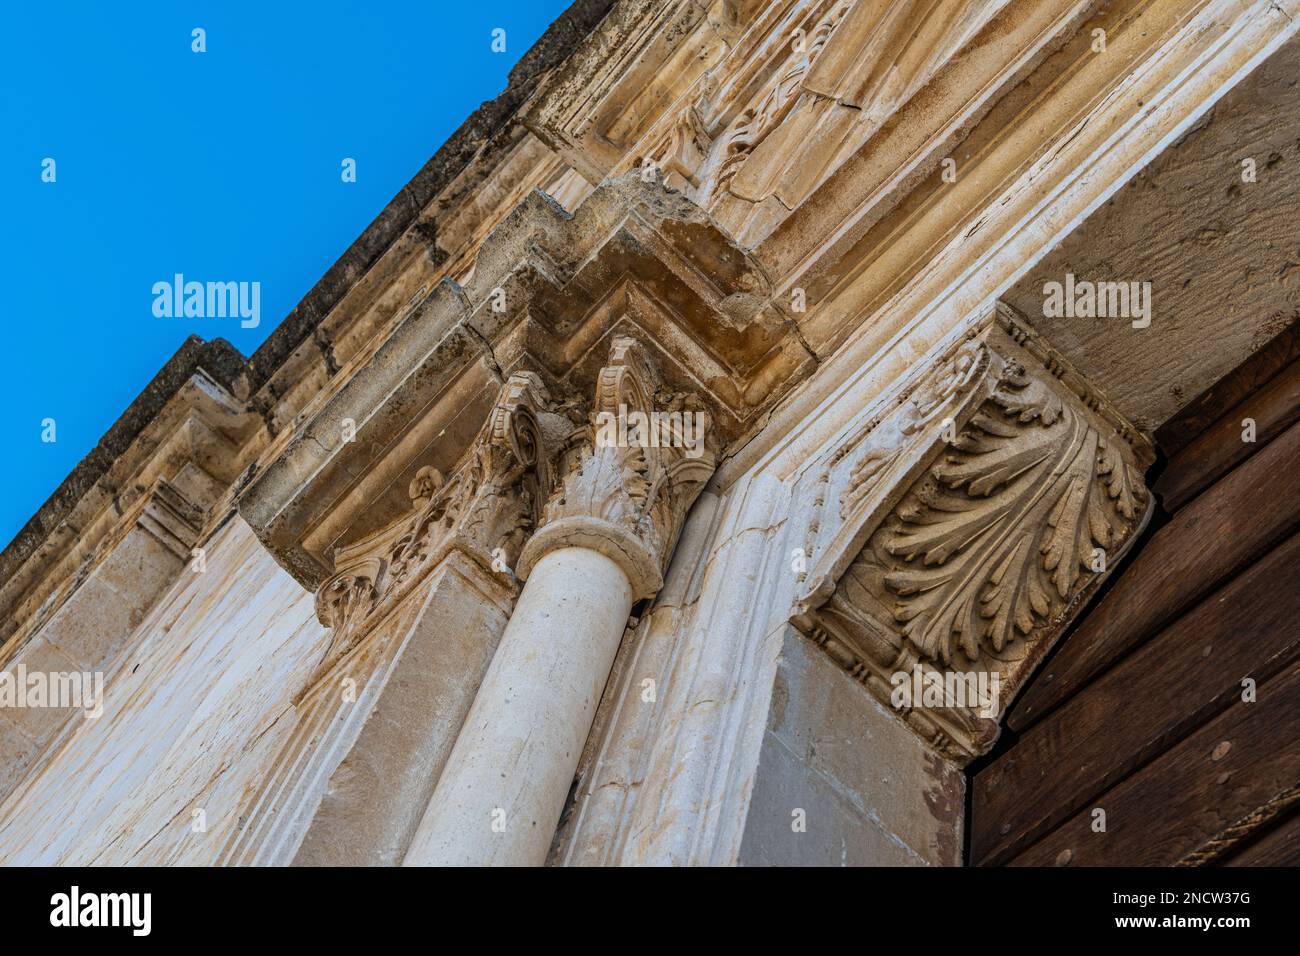 Dettagli architettonici della chiesa di Santa Maria de' Centurelli, sulla pista dell'Aquila-Foggia. Caporciano, Provincia dell'Aquila, Abruzzo, Ita Foto Stock